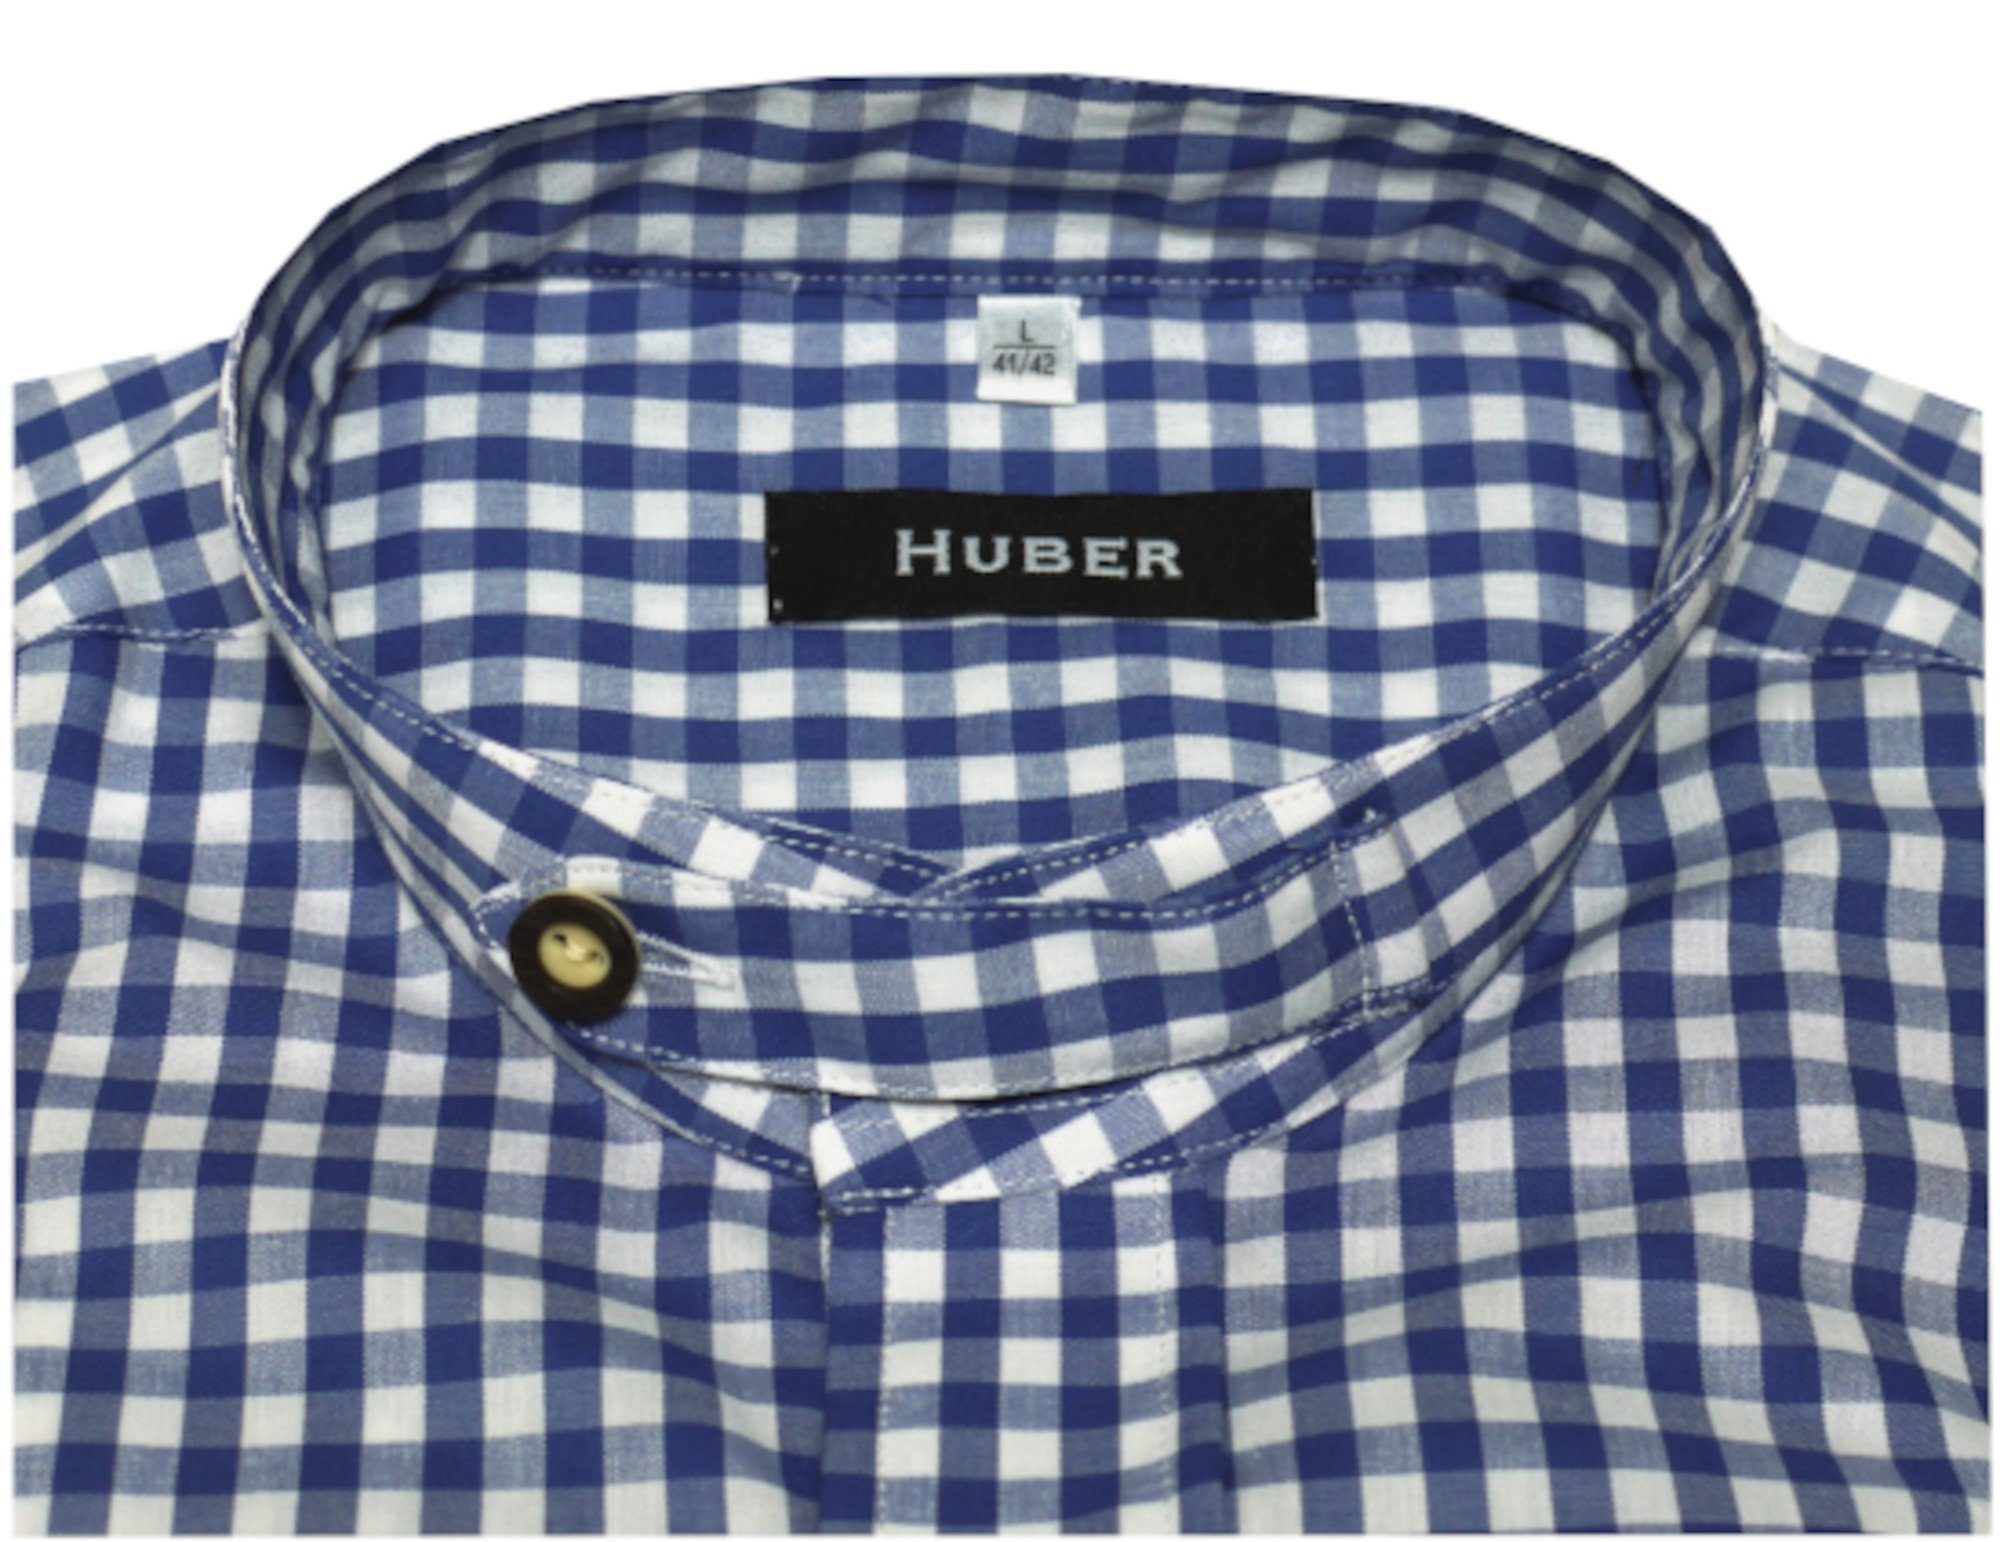 HU-0722 Huber Fit-gerader Krempelarm, Schnitt Regular mit Stehkragen Lasche, blau-weiß Trachtenhemd Hemden